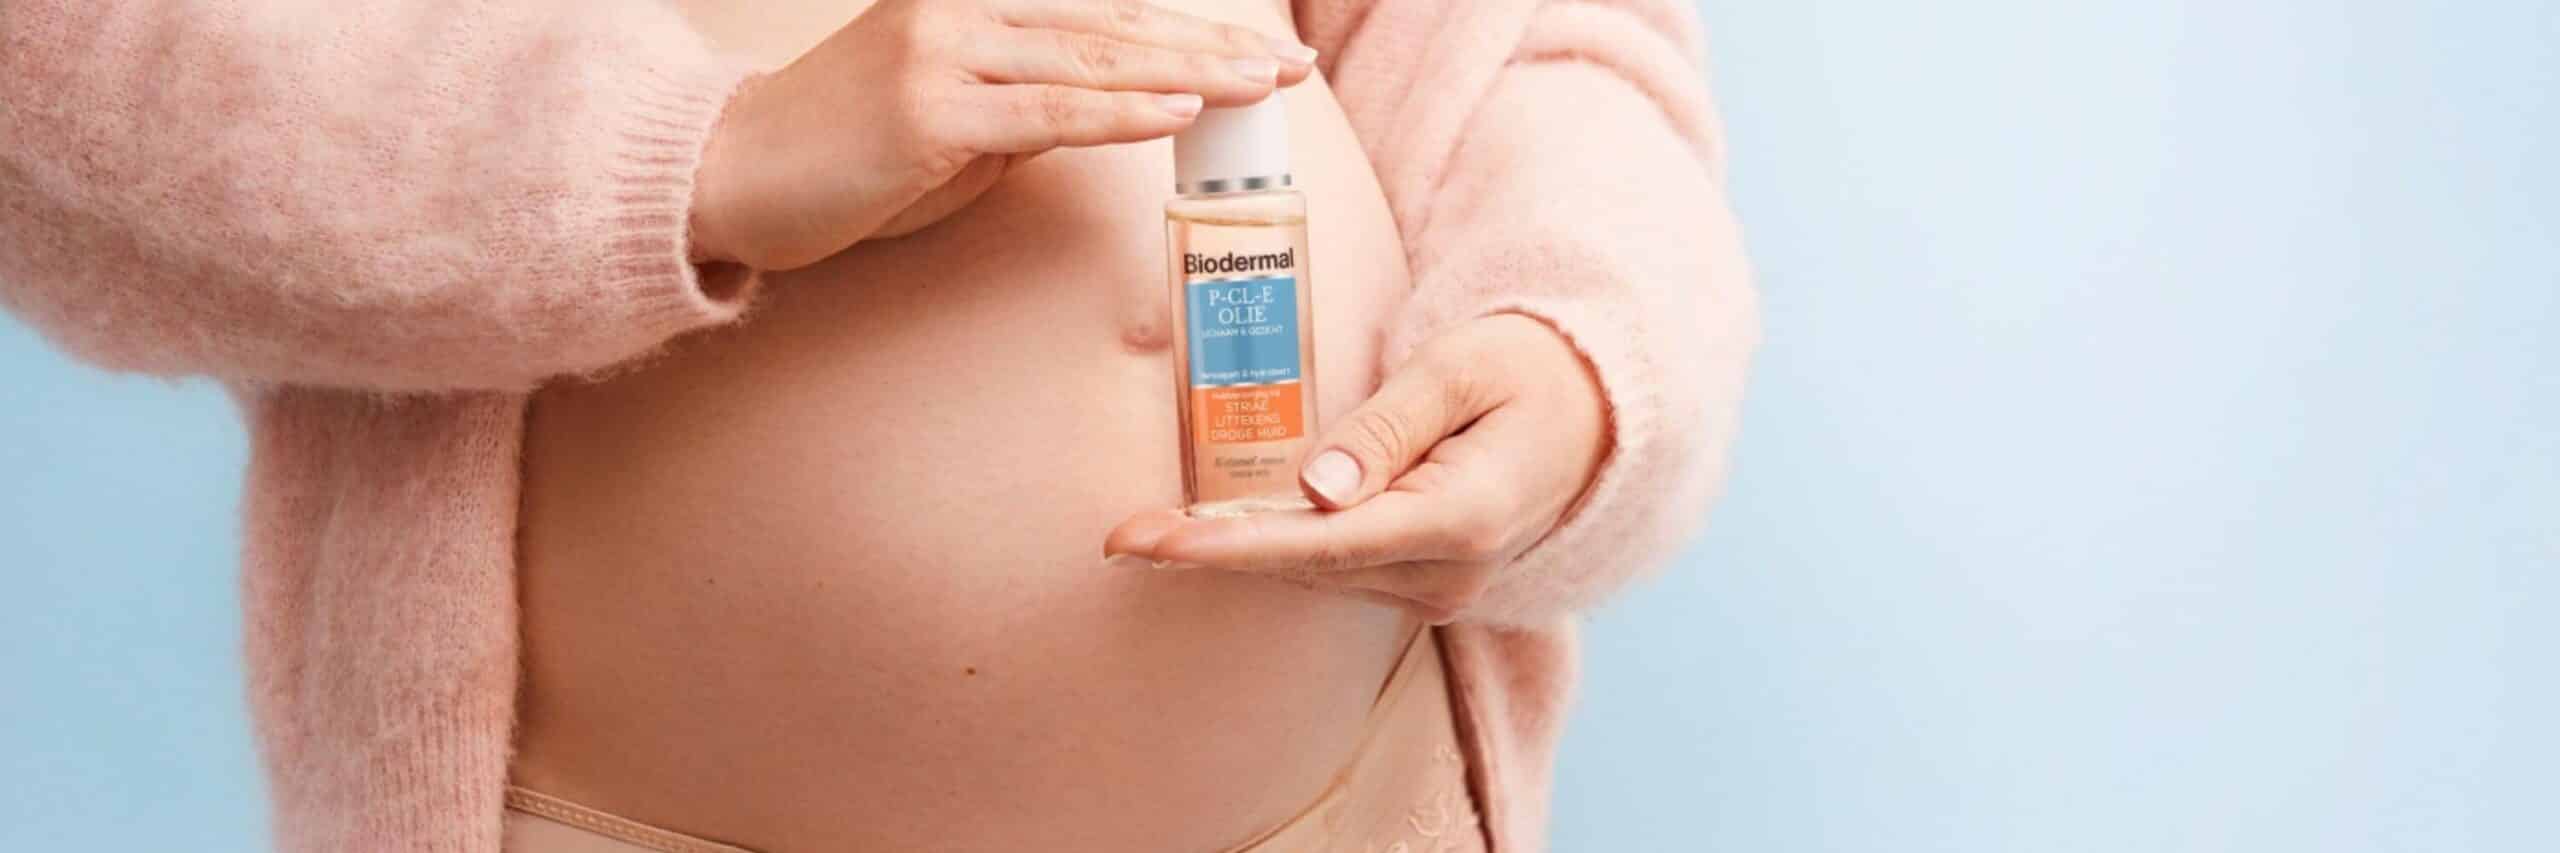 De juiste huidverzorging bij zwangerschapskwaaltjes